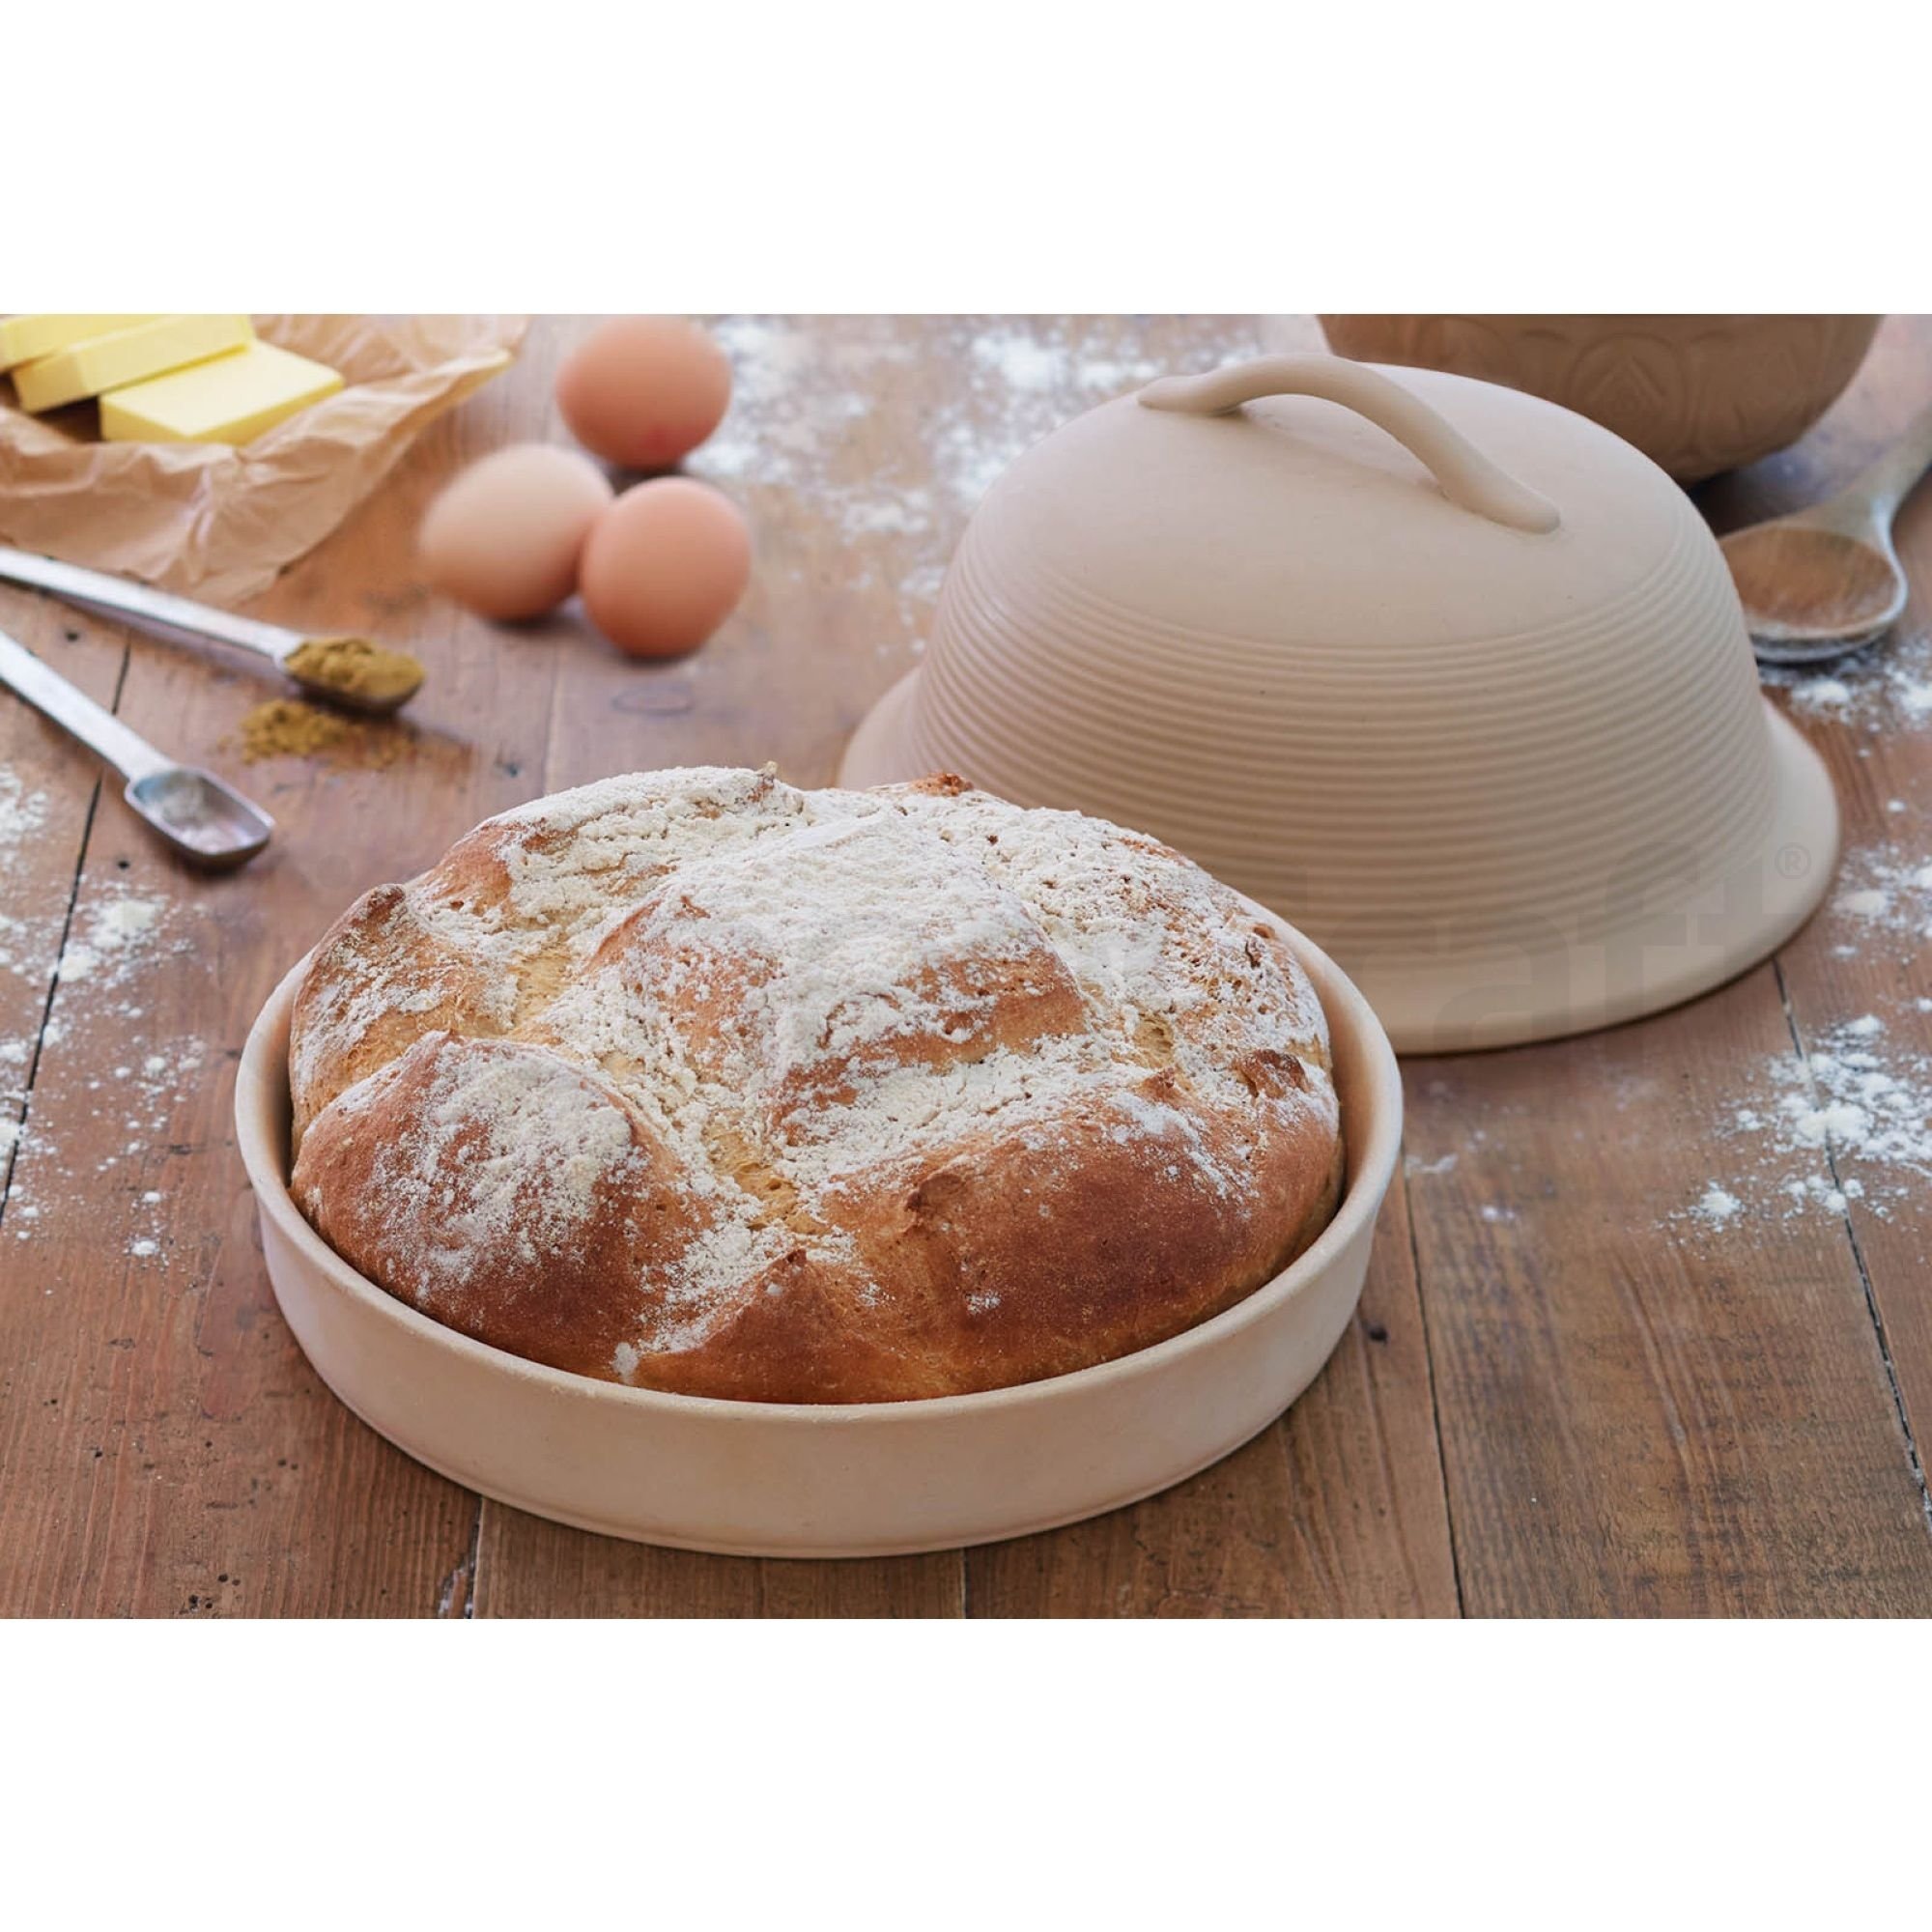 Колпак для выпечки. Керамическая форма для выпечки хлеба. Керамический купол для выпечки хлеба. Глиняная форма для выпечки хлеба. Круглая форма для выпечки хлеба.